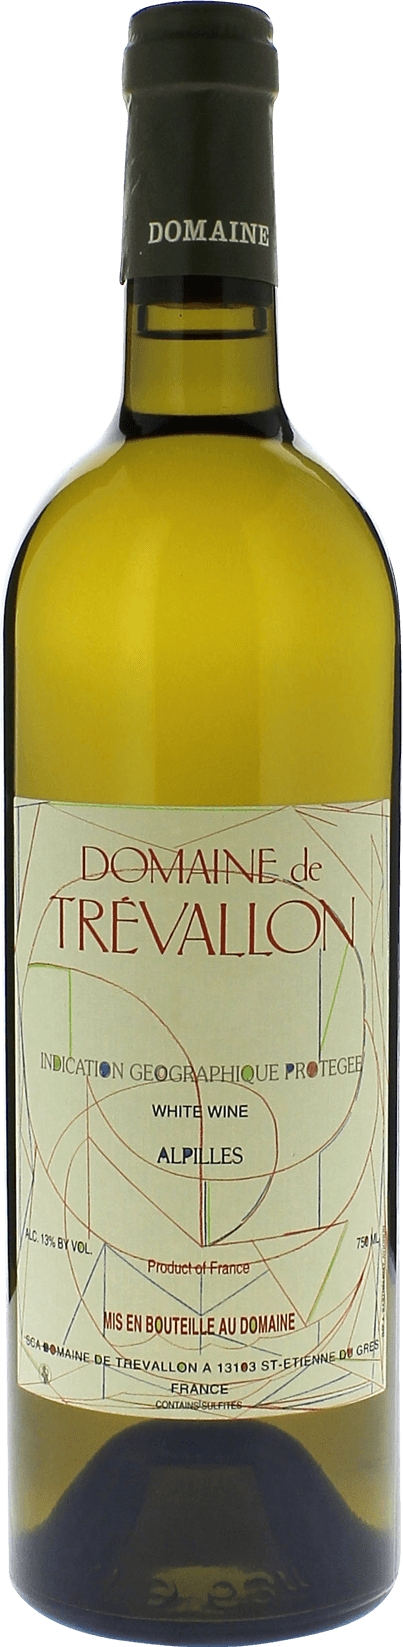 Domaine de trevallon blanc 2017  Vin de Pays, Provence